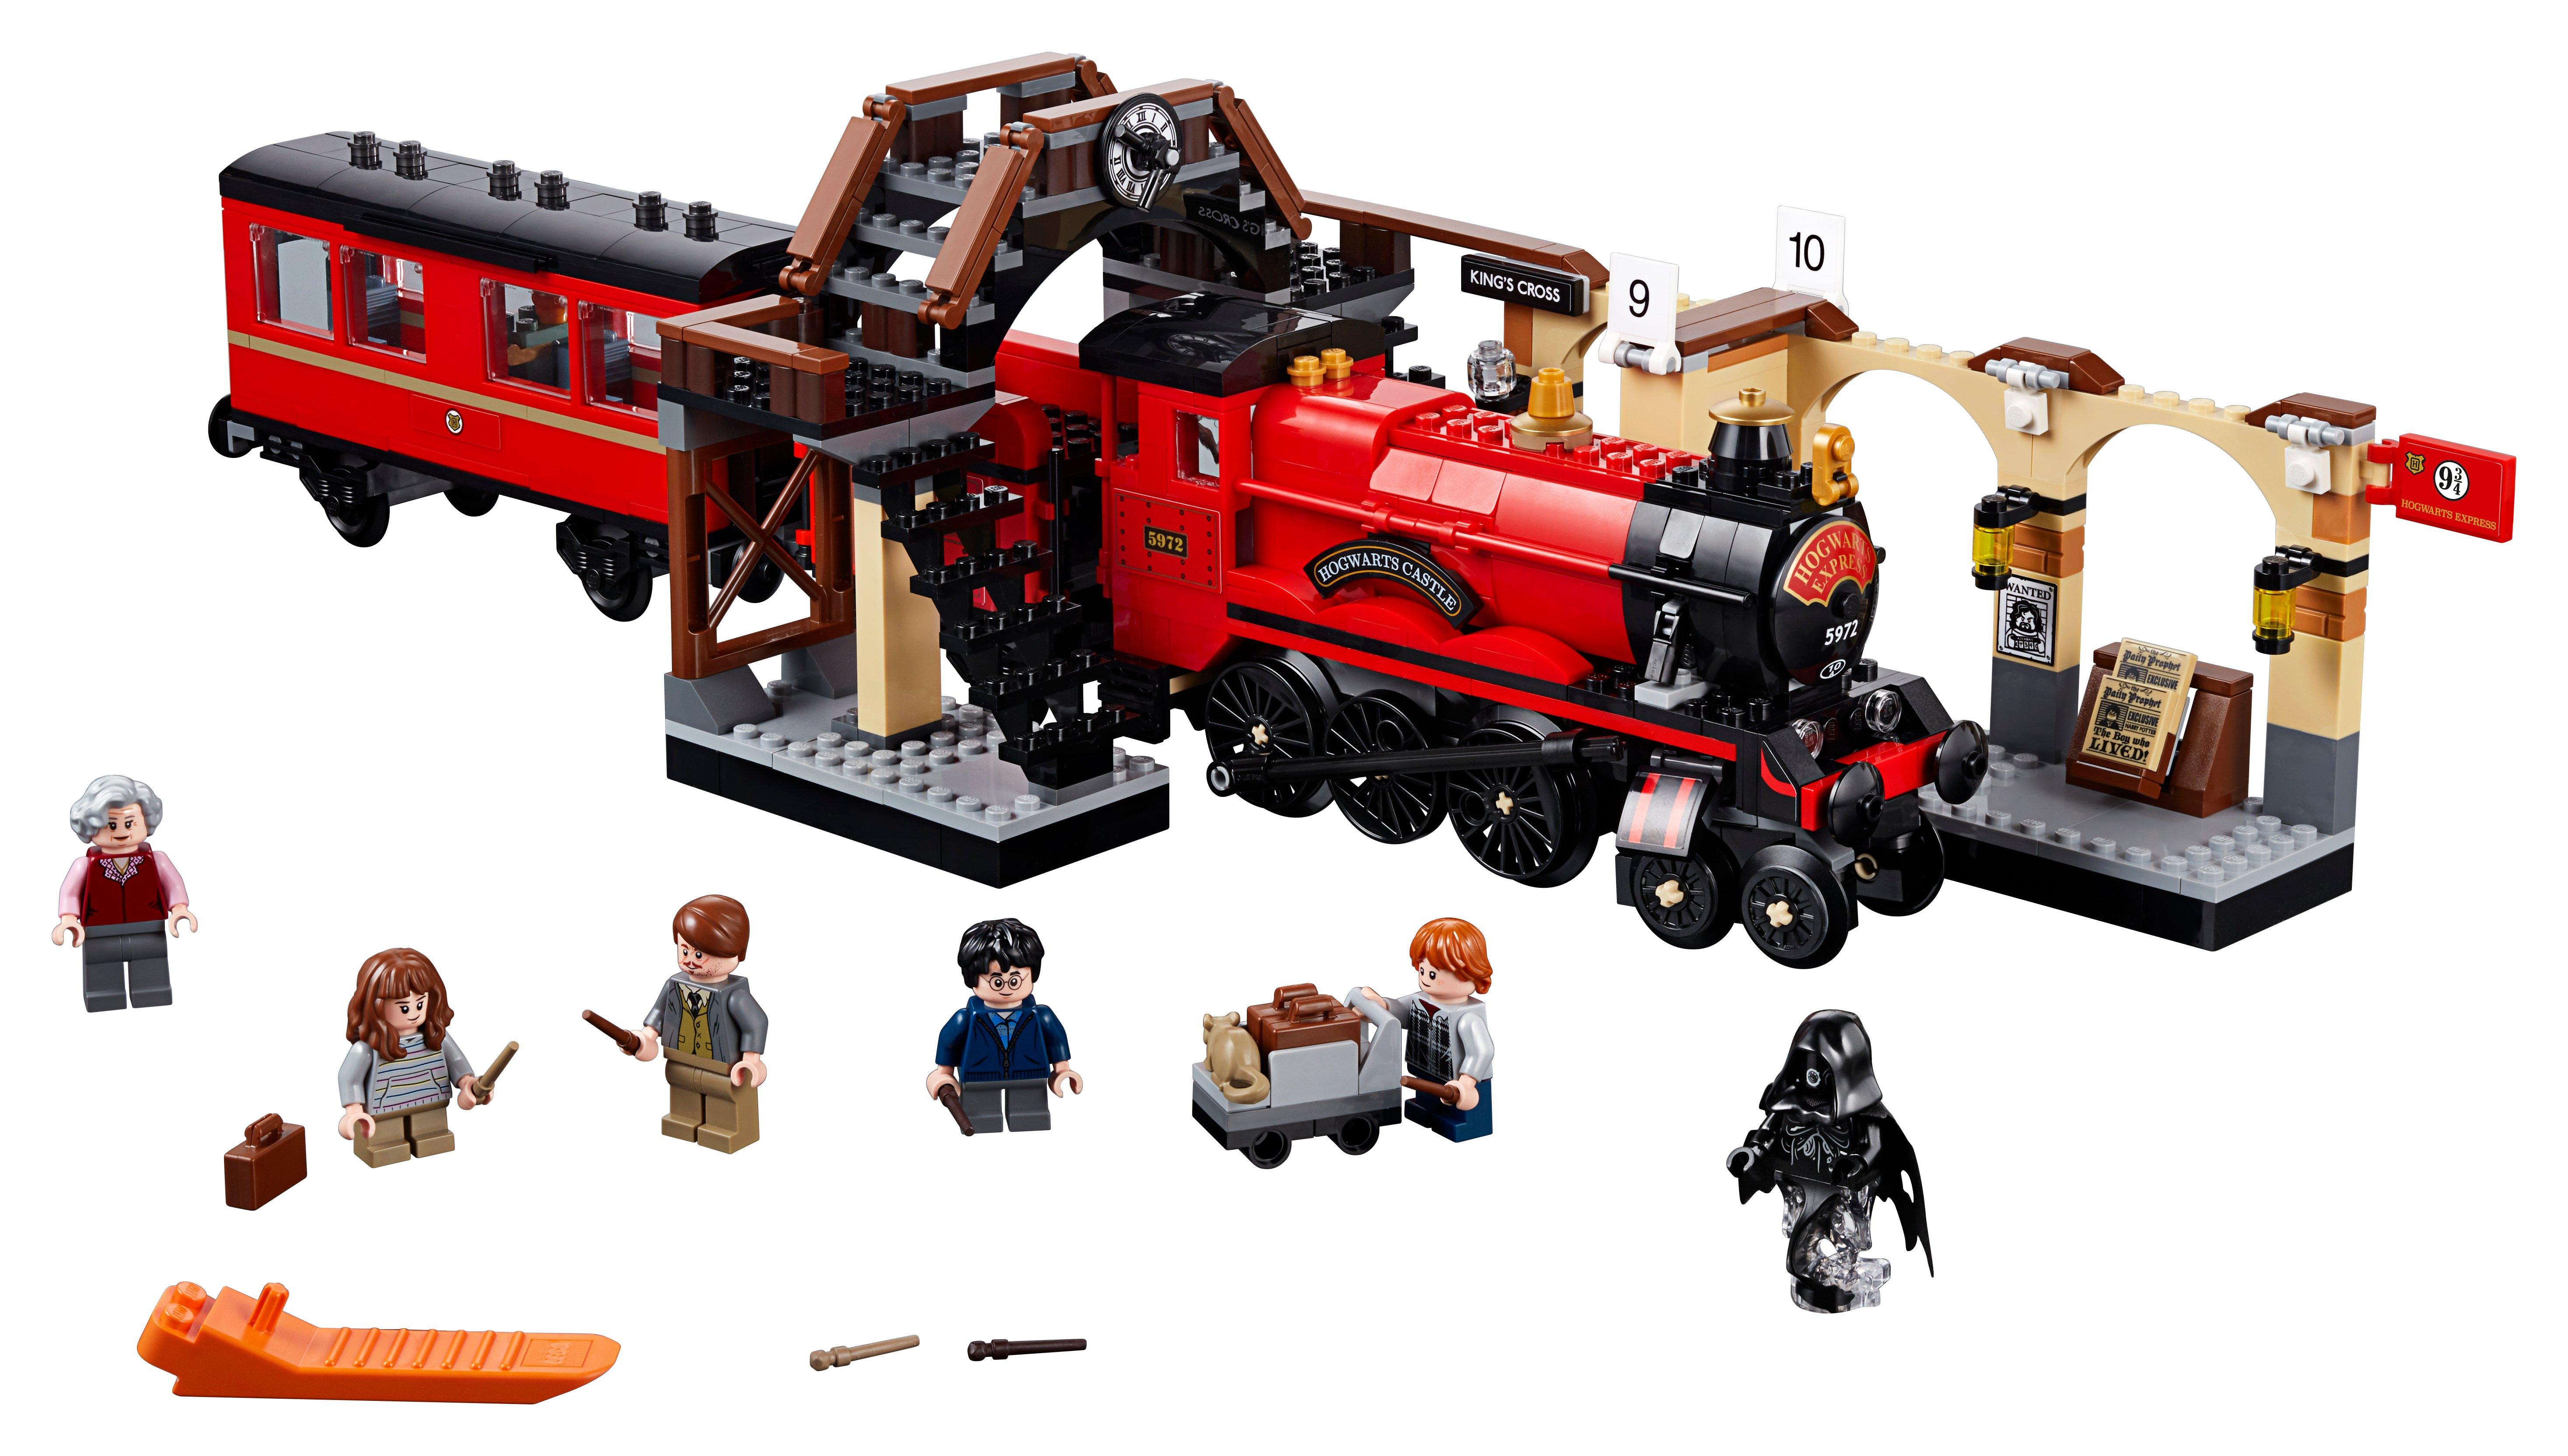 LEGO®  75955 Hogwarts™ Express 